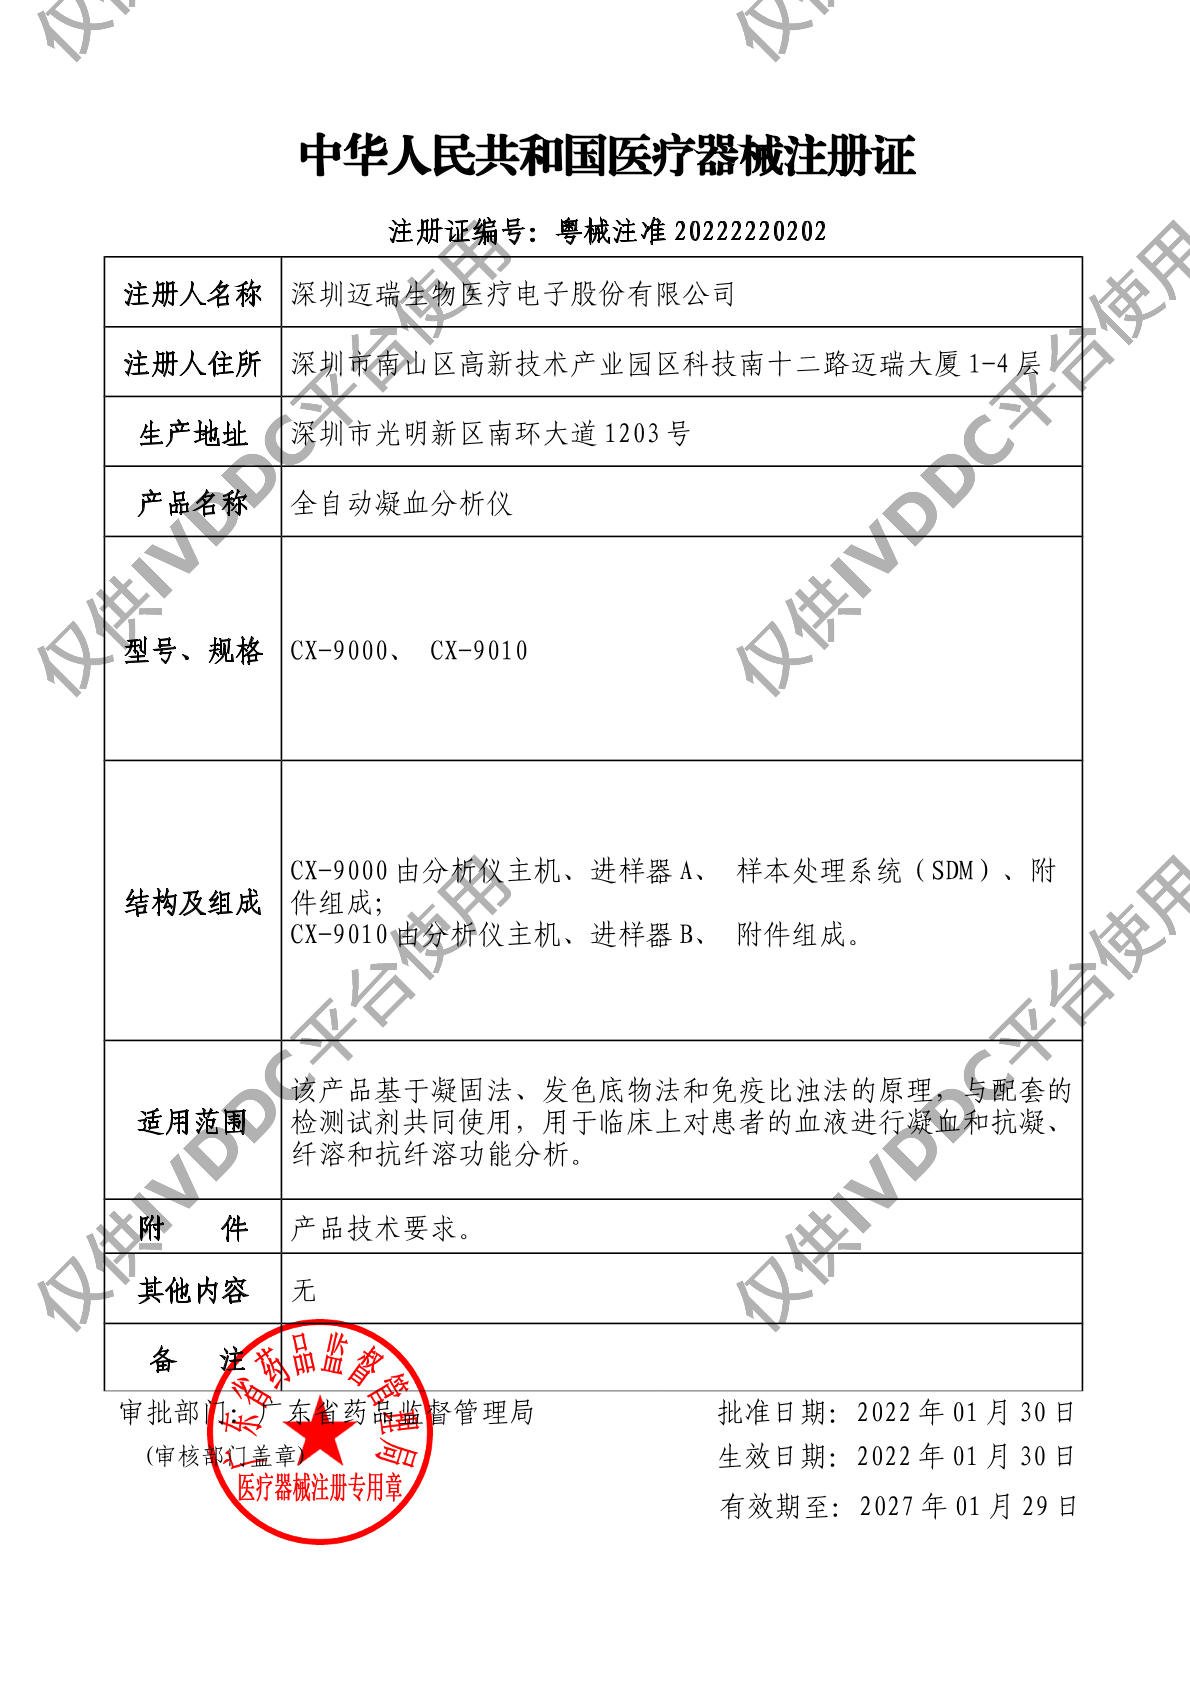 【迈瑞】 全自动凝血分析仪 CX-9000注册证